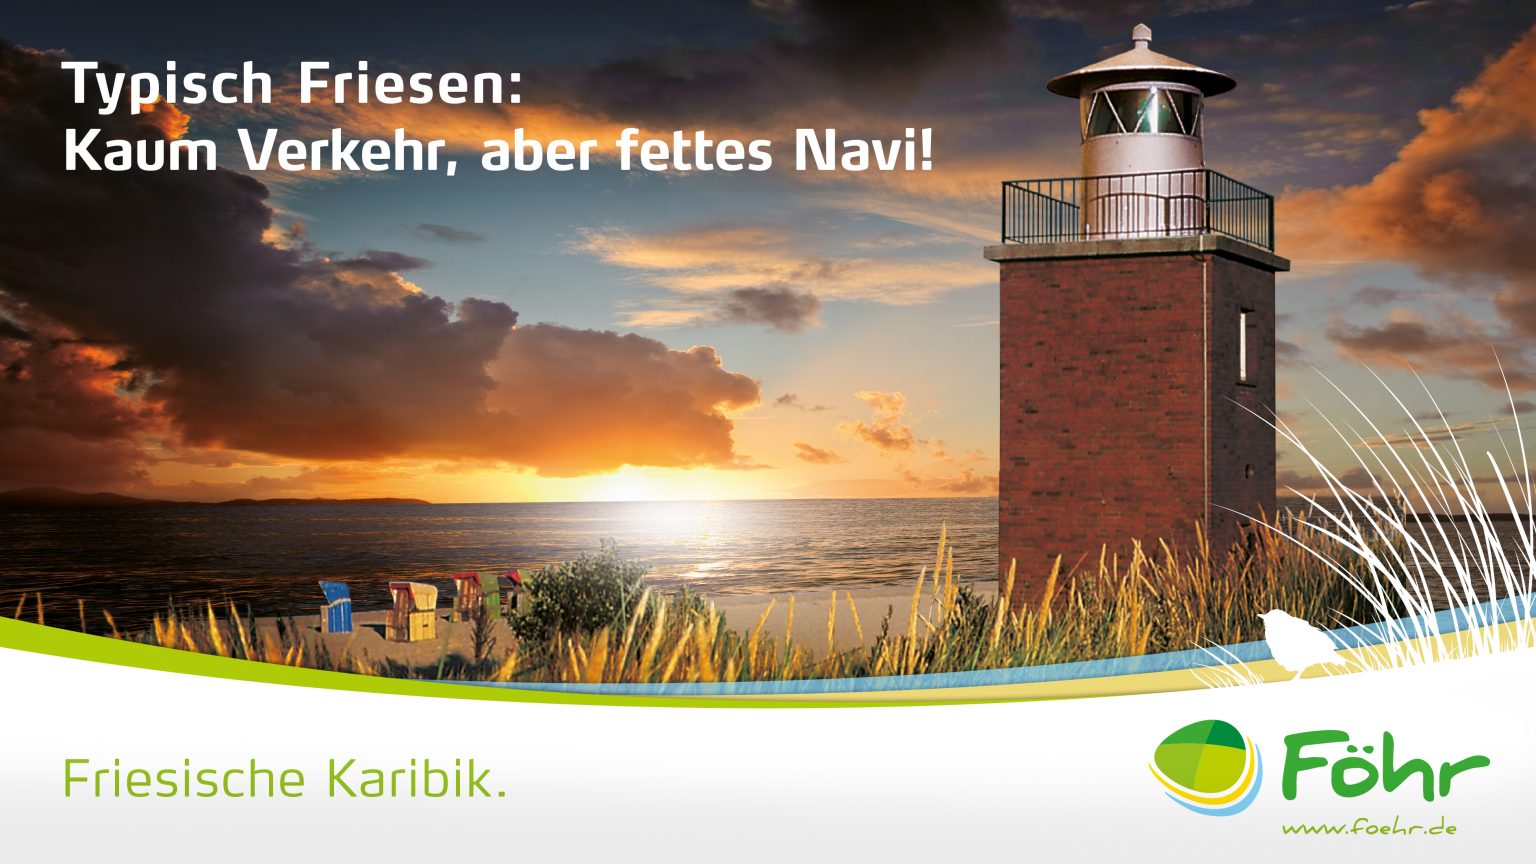 Plakat im neuen Corporate Design für Insel Föhr